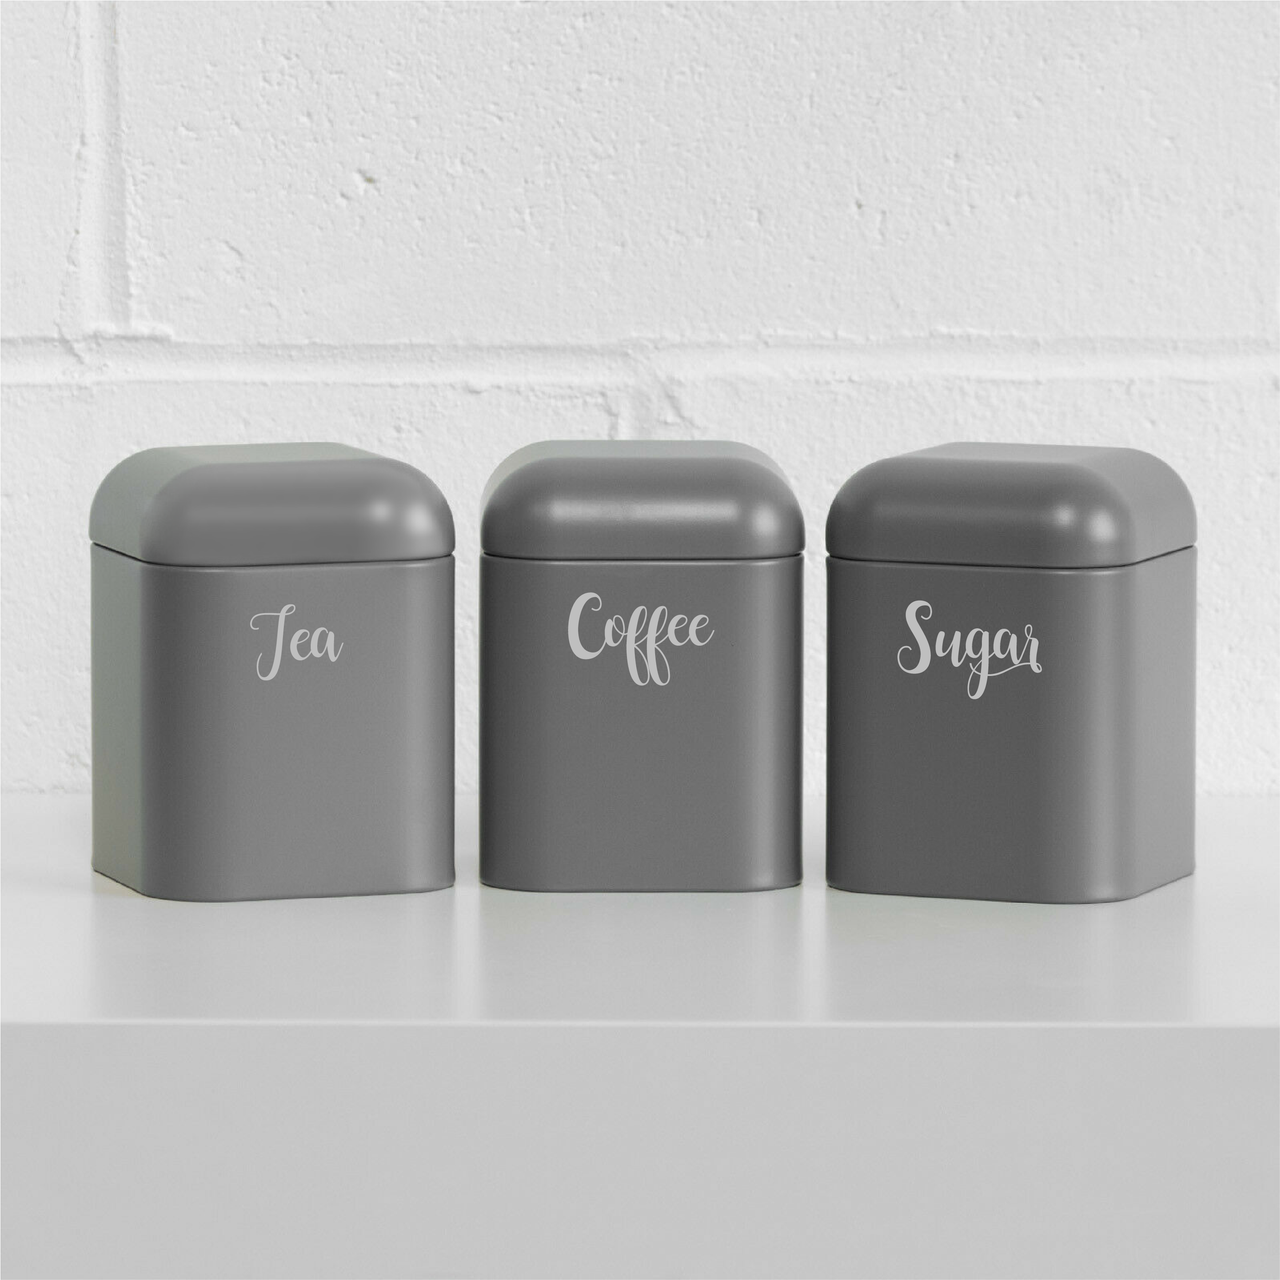 TEA COFFEE SUGAR - Kitchen Decals (Type 3)